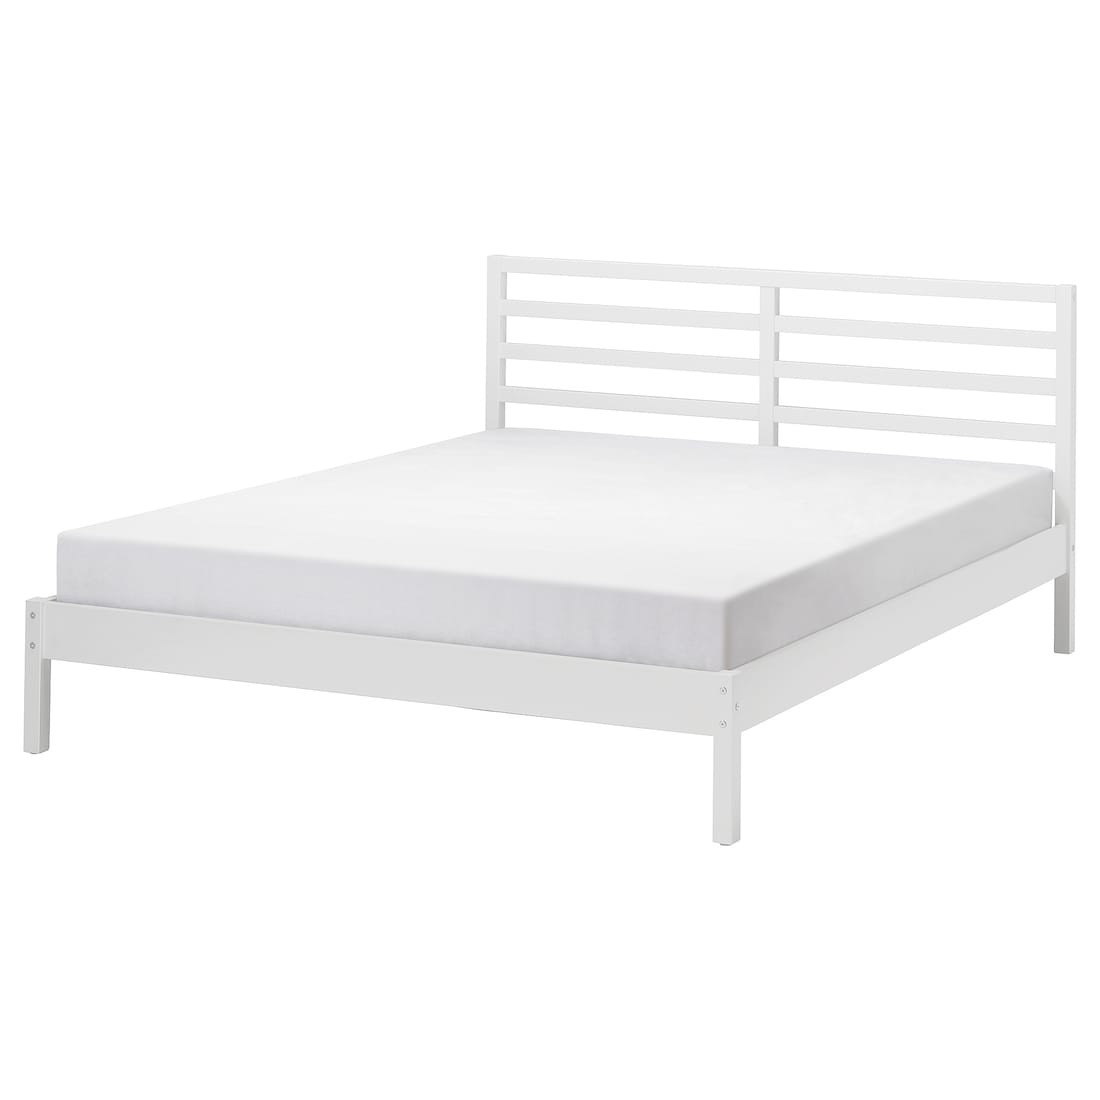 TARVA Кровать, белое морилка / Lindbåden, 140x200 см